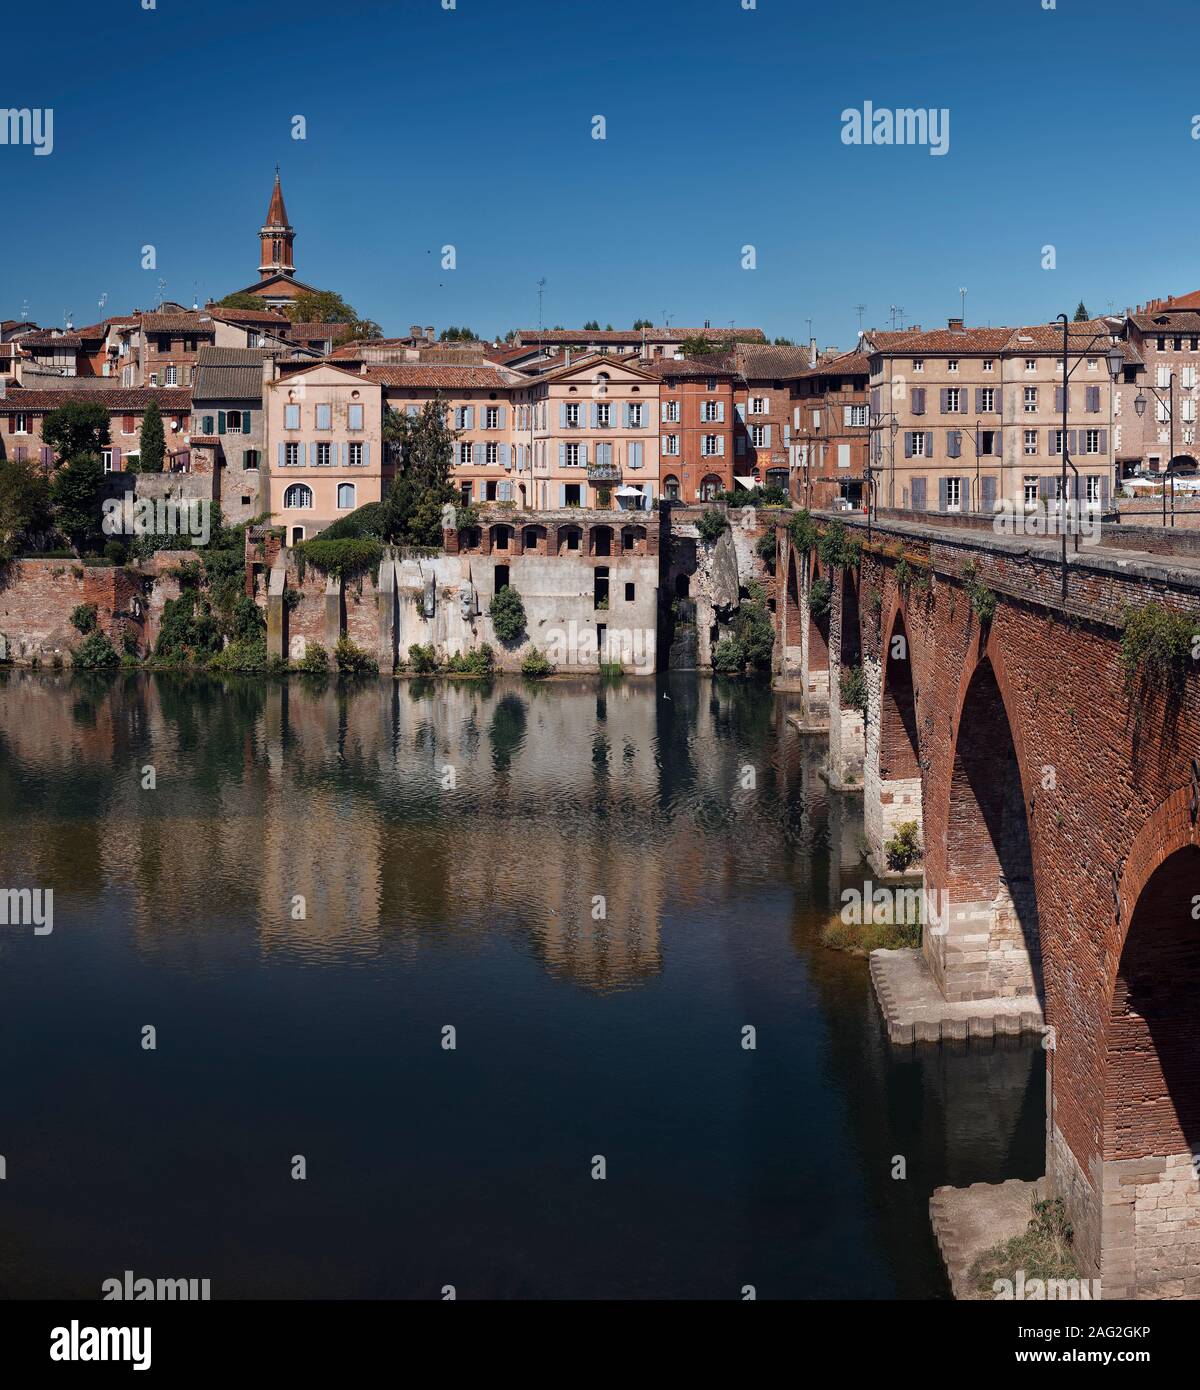 Stadt Albi in Südfrankreich, historischen Stadt Architektur mit der Alten Brücke Pont Vieux über den Fluss Tarn. Stockfoto